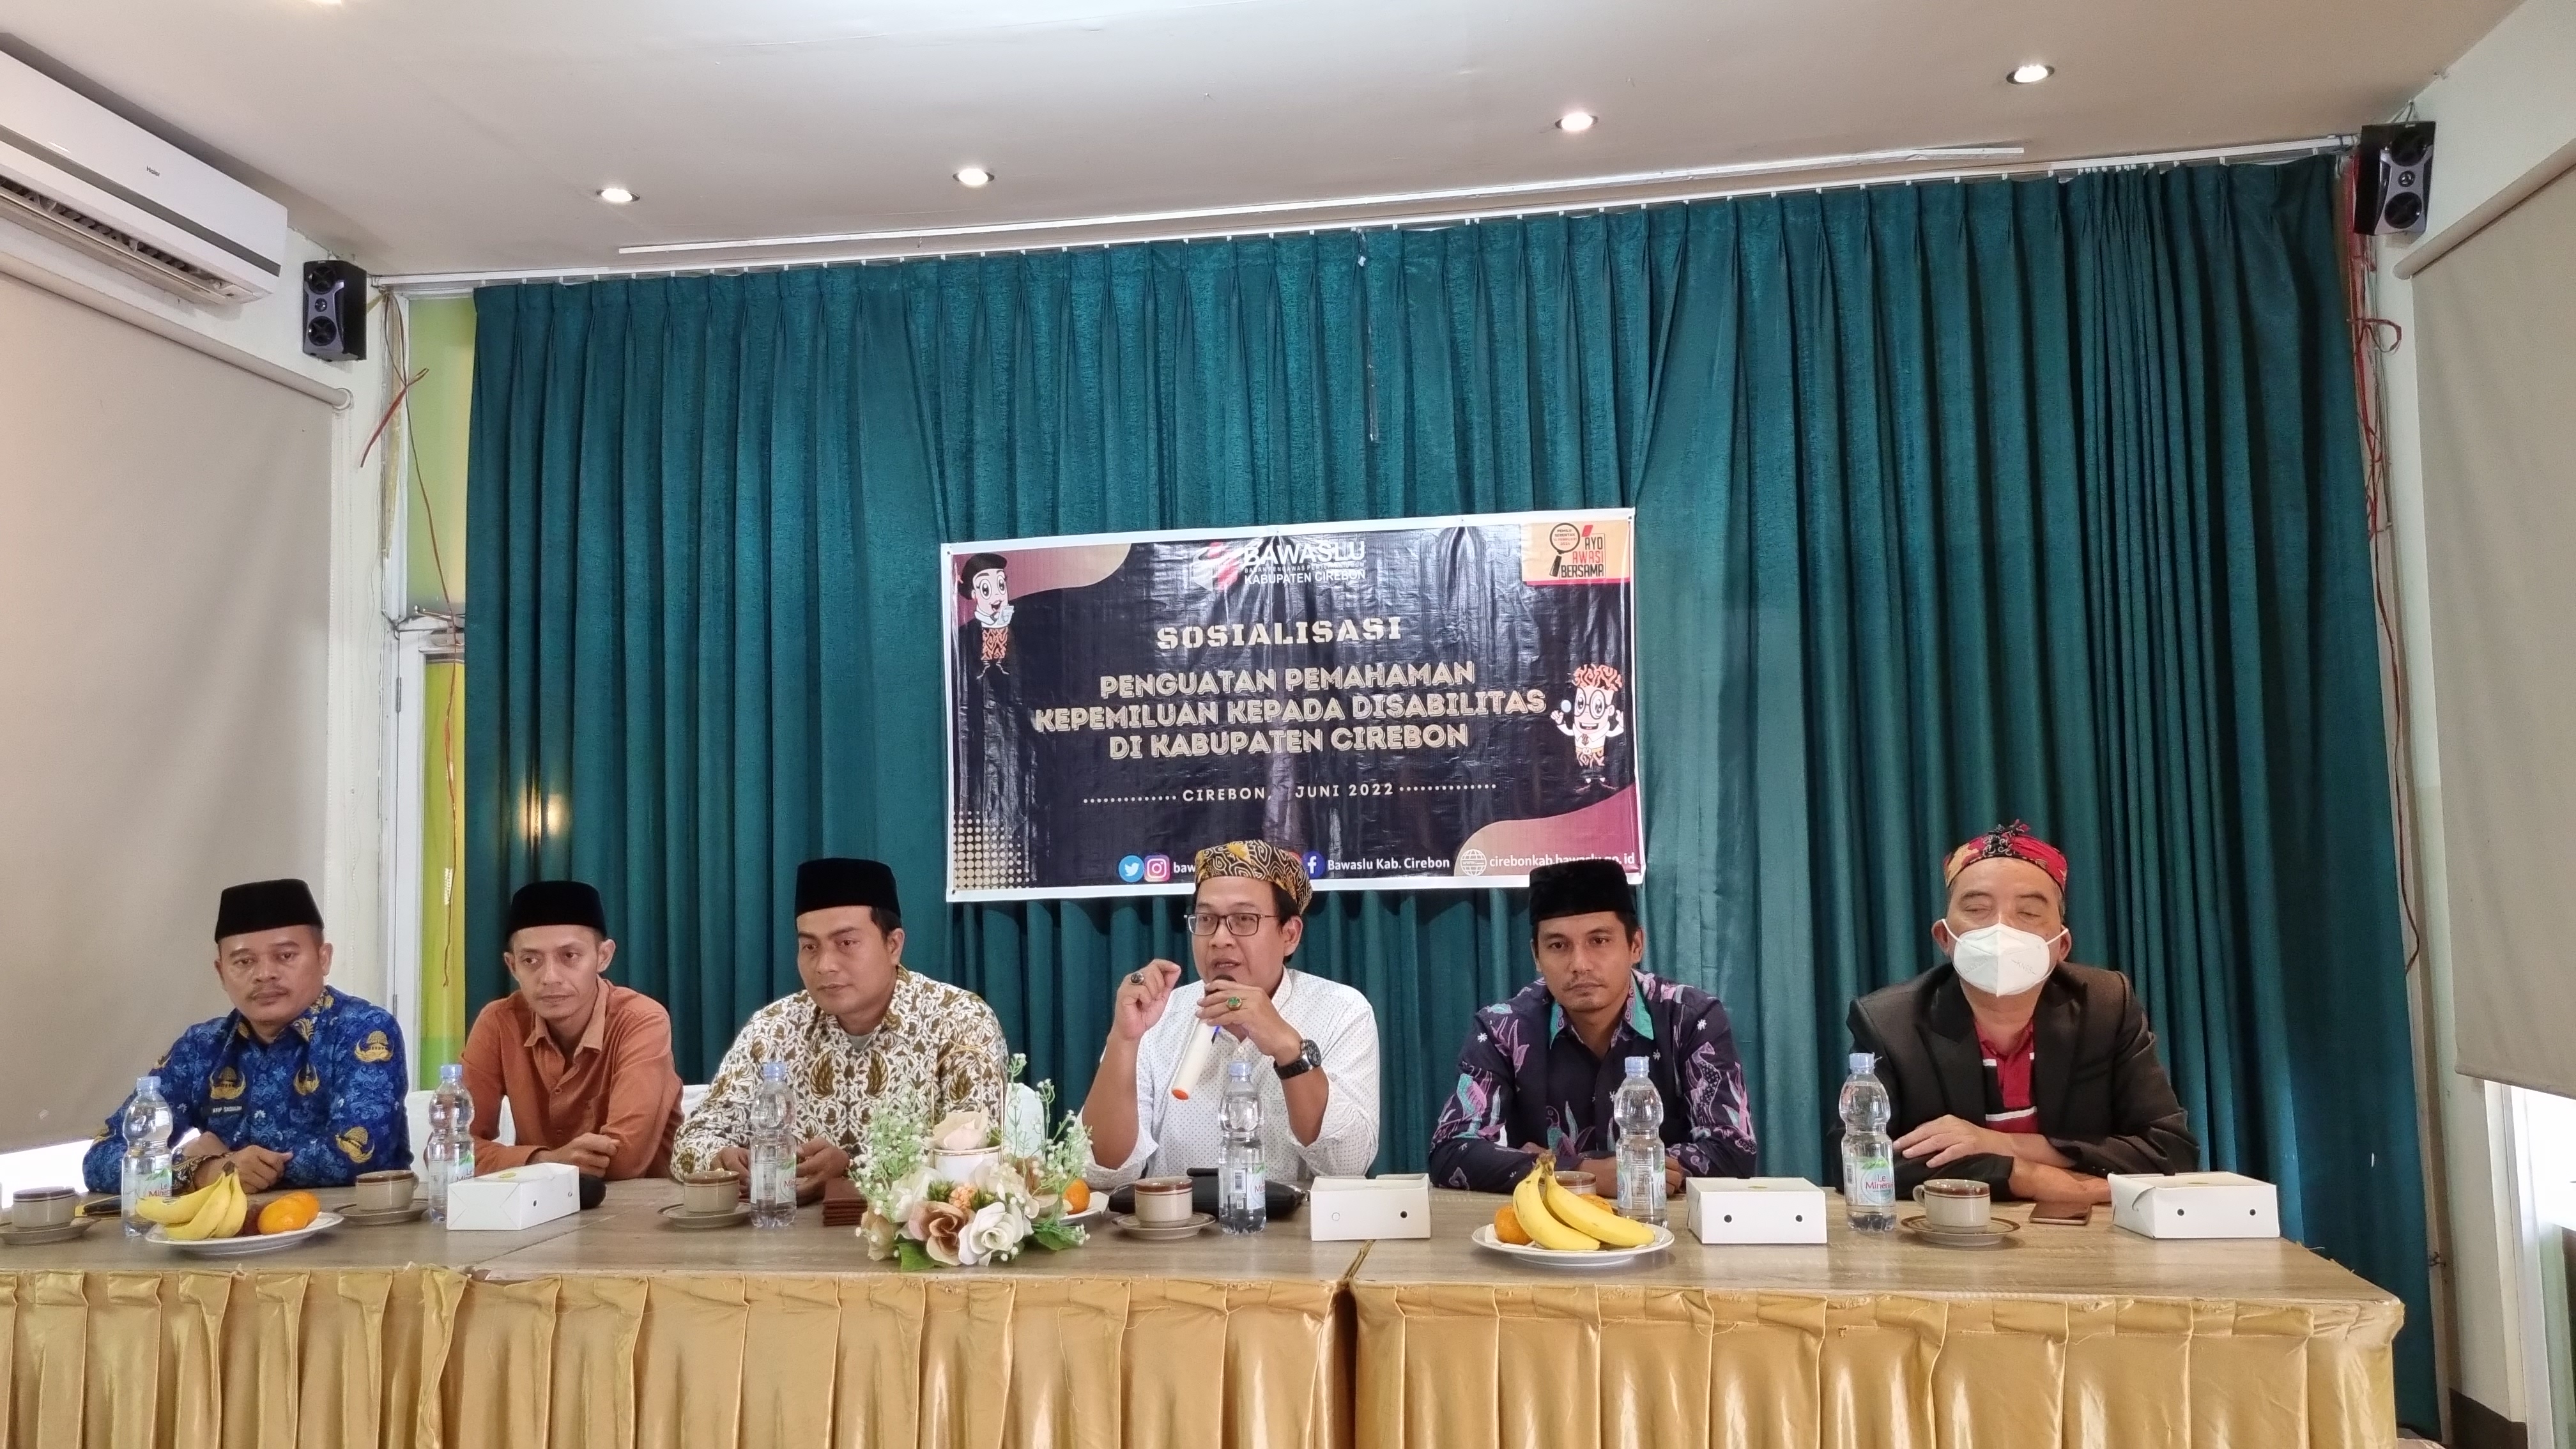 Menyambut Pemilu Tahun 2024, Bawaslu Kabupaten Cirebon bekali penguatan kepemiluan kepada Kaum Disabilitas